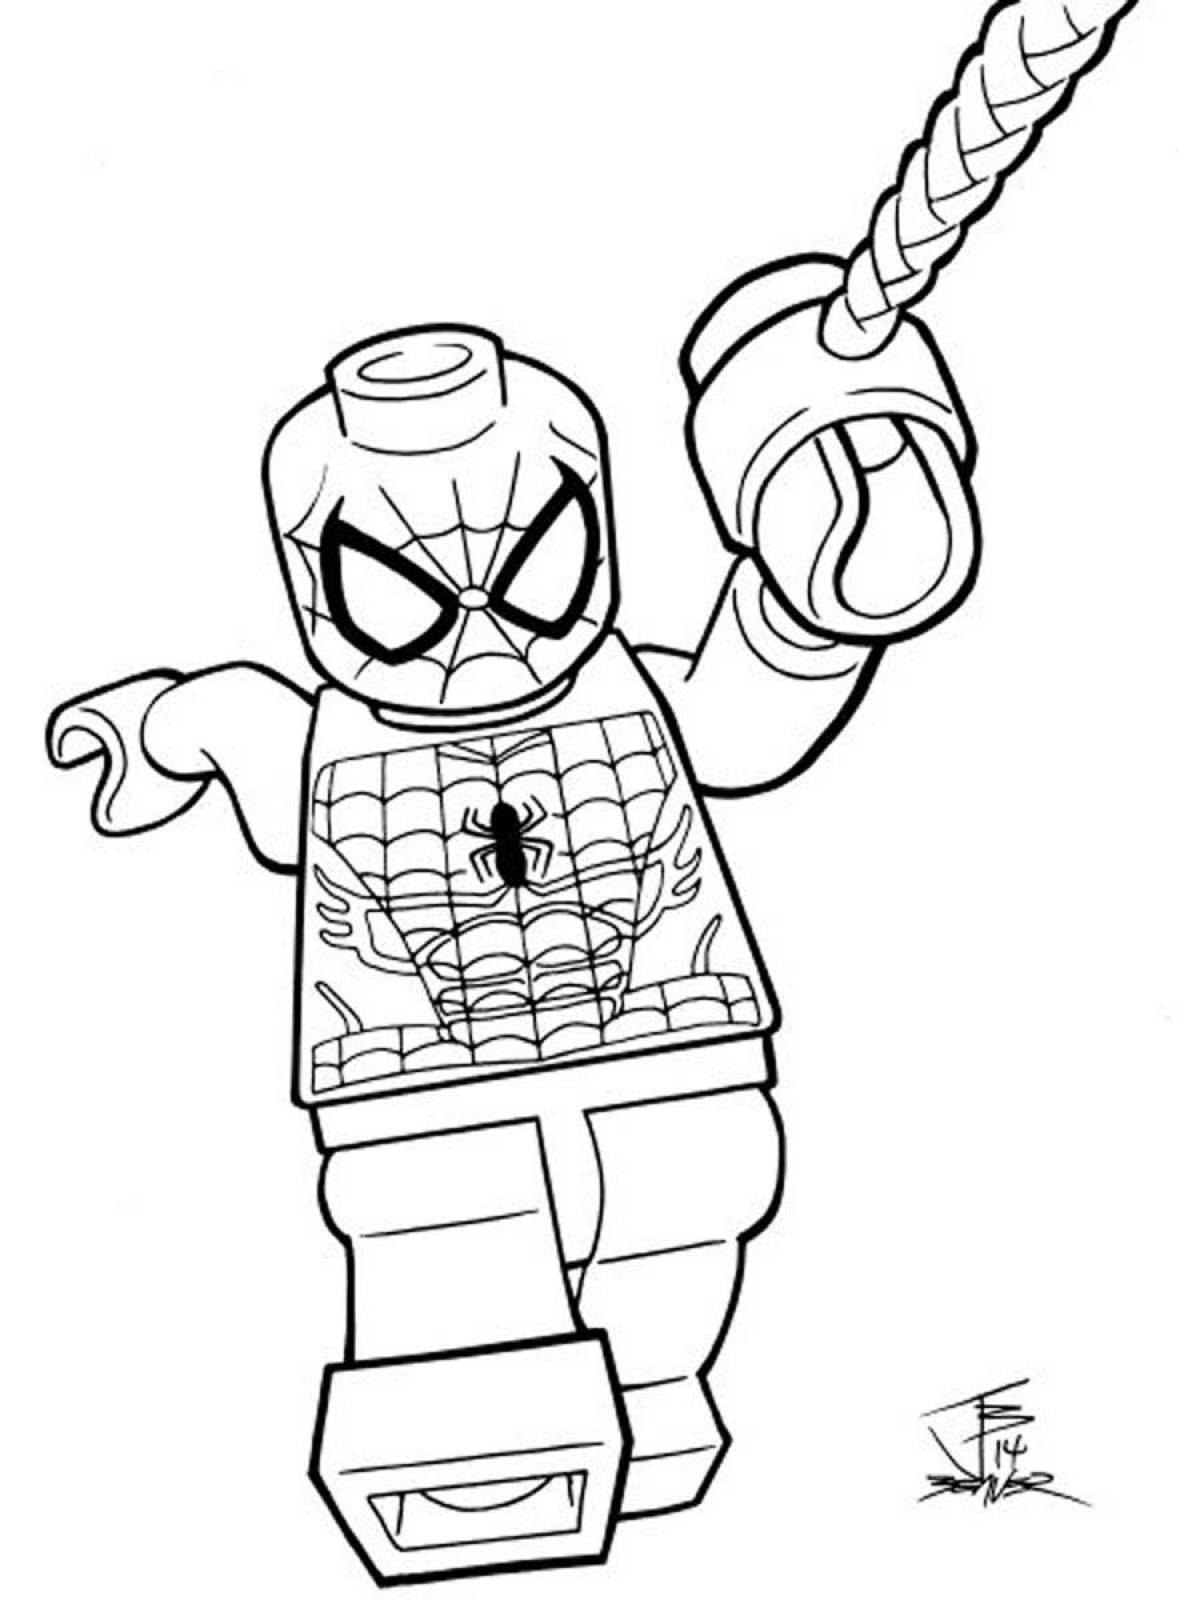 Раскраска Человек паук для детей | Лего раскраски, Раскраски, Раскраски для печати